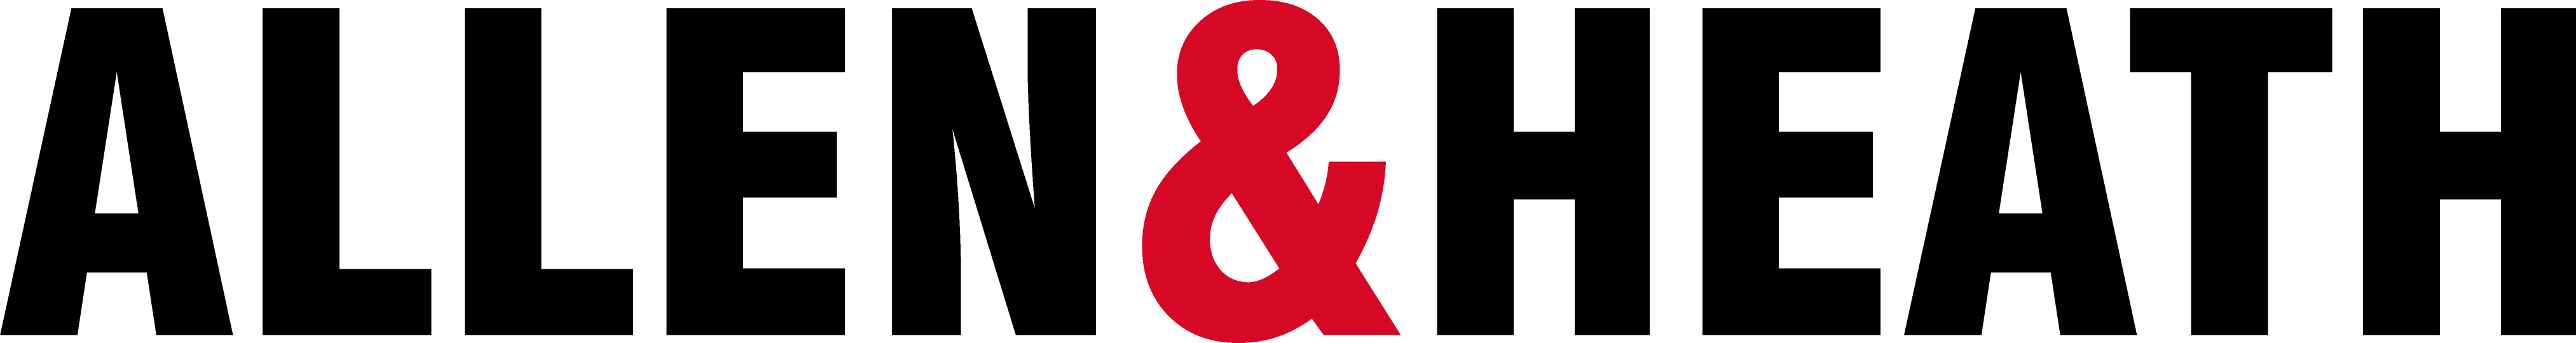 logo for Allen & Heath